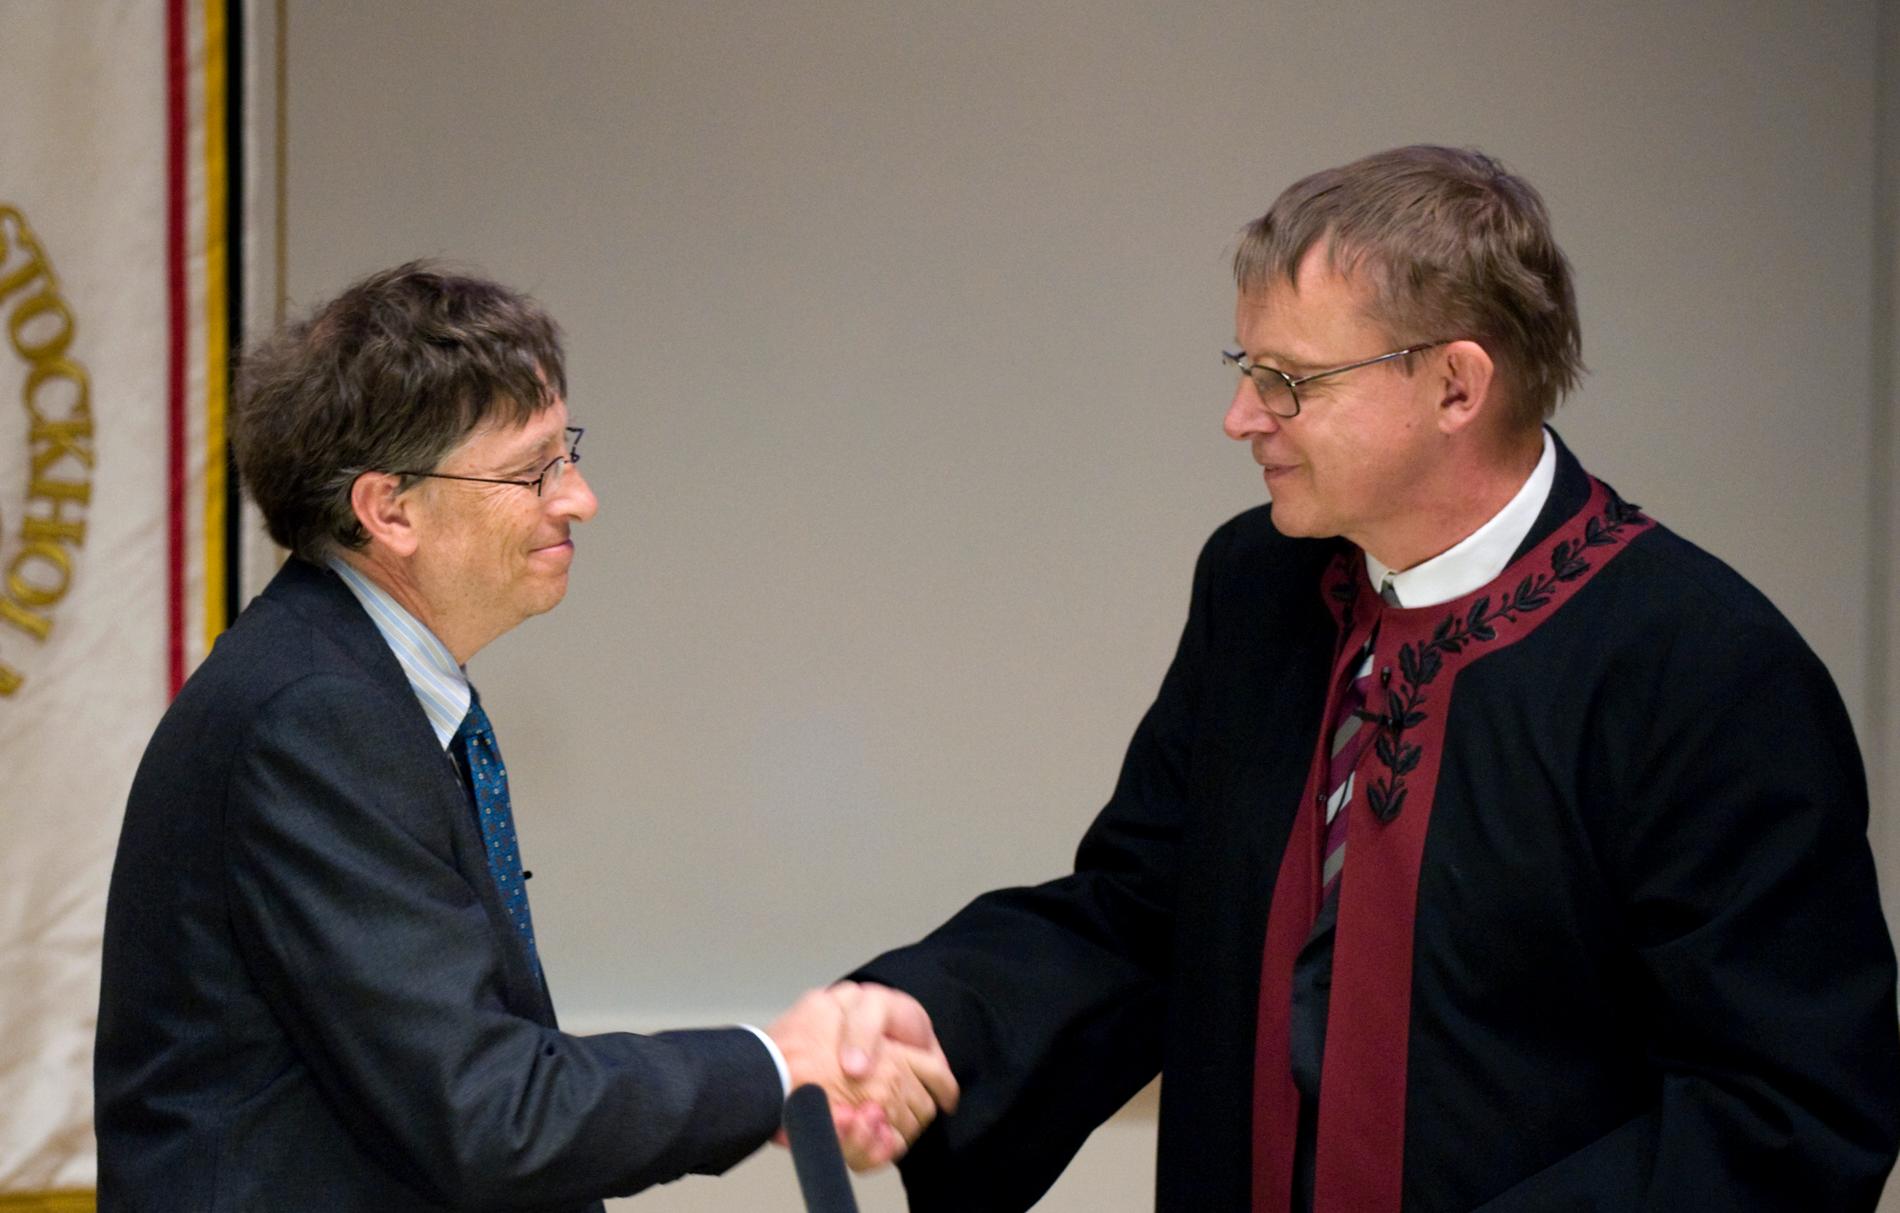 Gates utsågs till hedersdoktor vid Karolinska Institutet i Solna. Hans Rosling skakade hand med Gates.